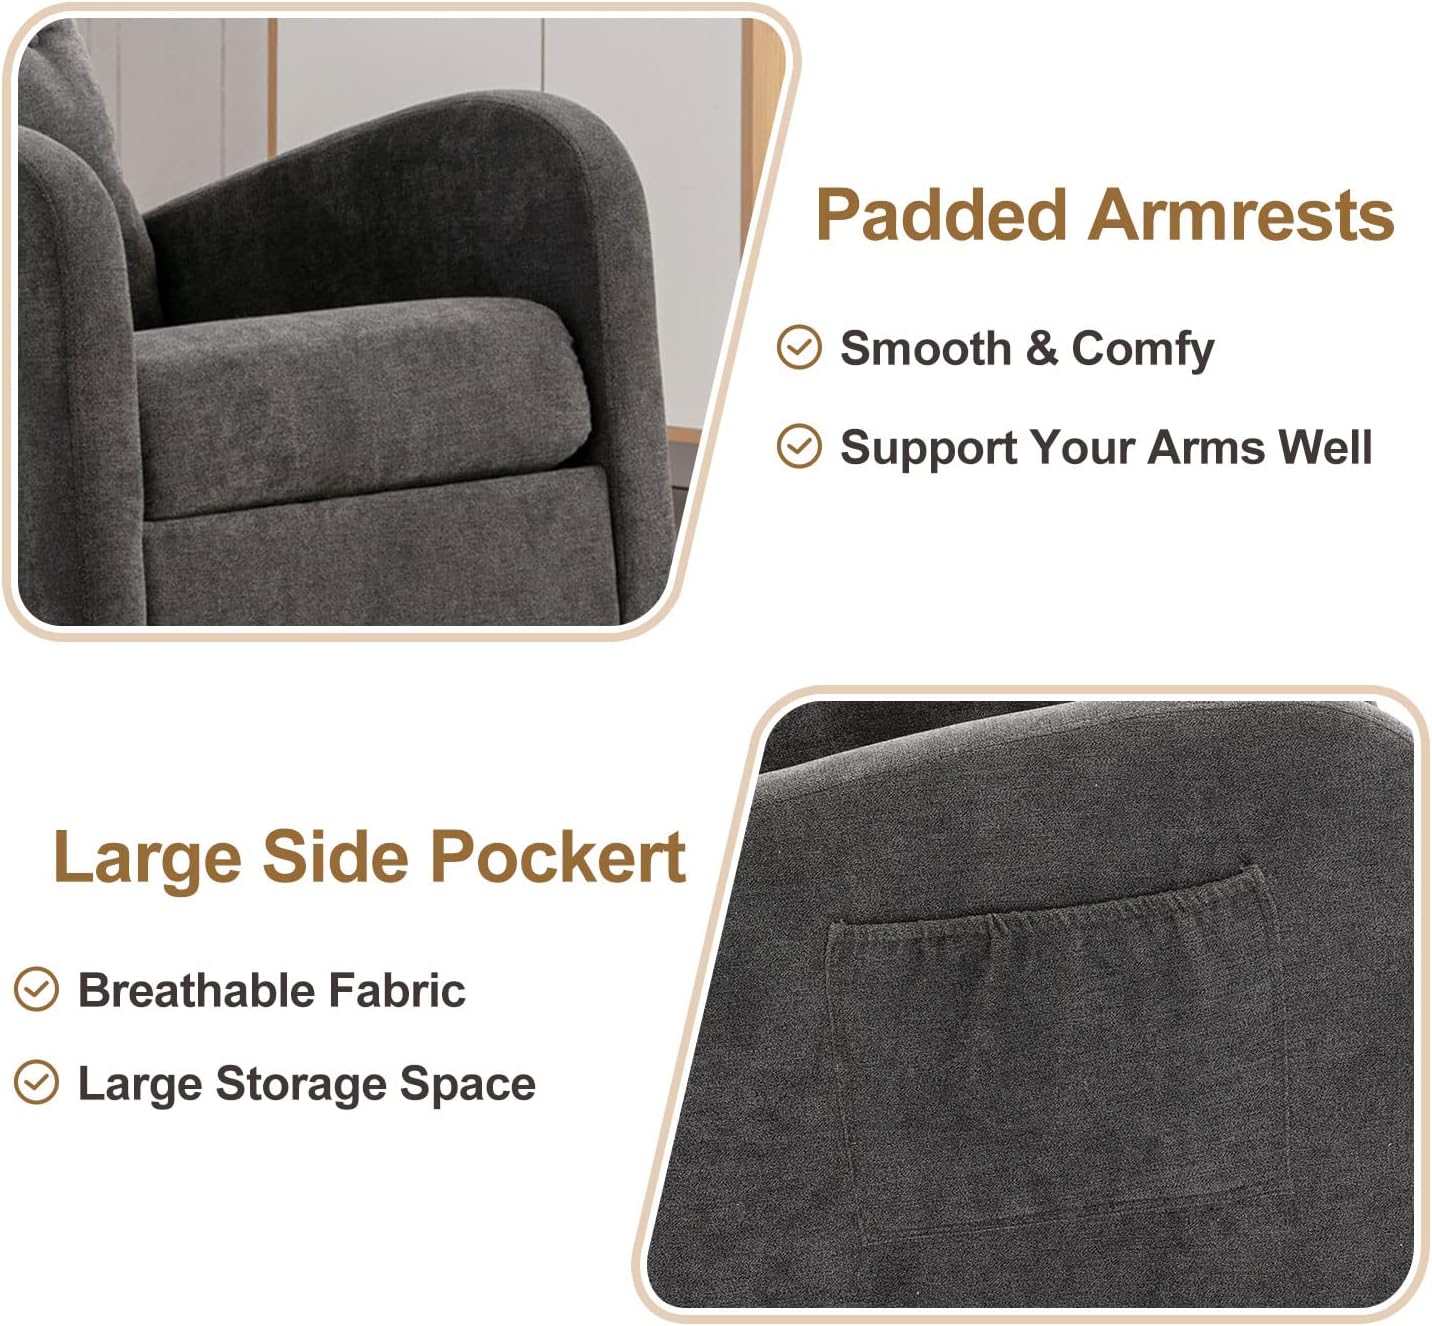 Mecedora moderna, tapizada para guardería, cómoda silla con bolsillo lateral